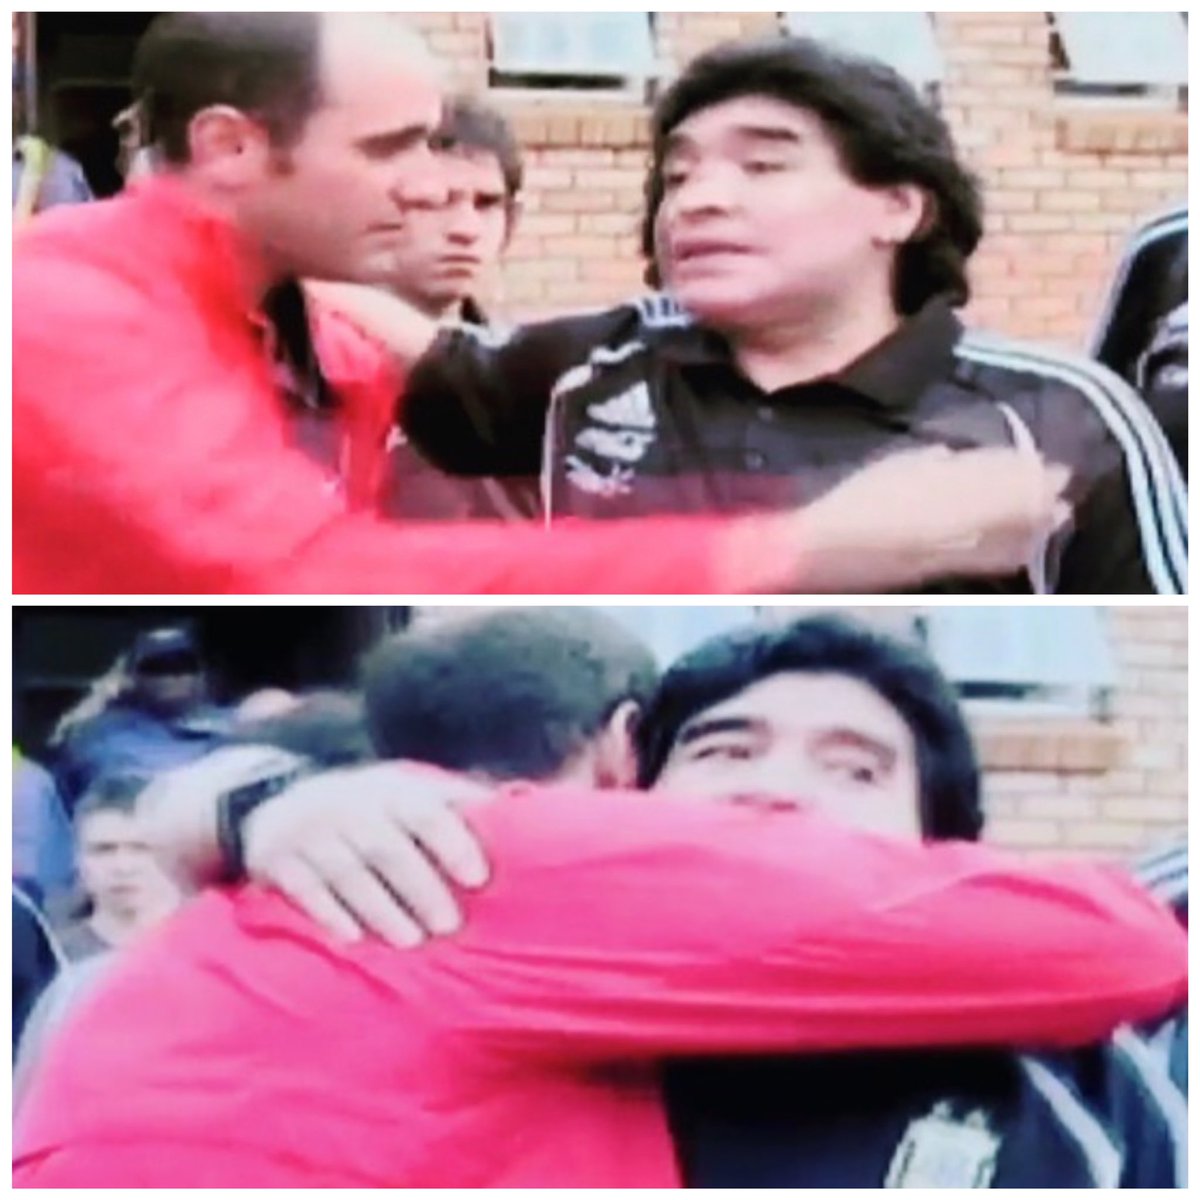 Hoy ante su pronta partida, cómo no recordar esa tarde de Alberto Lati con Maradona en Johannesburgo, donde terminó siendo su traductor 
QEPD

#LatitudesLaConferencia #AlbertoLati #Maradona